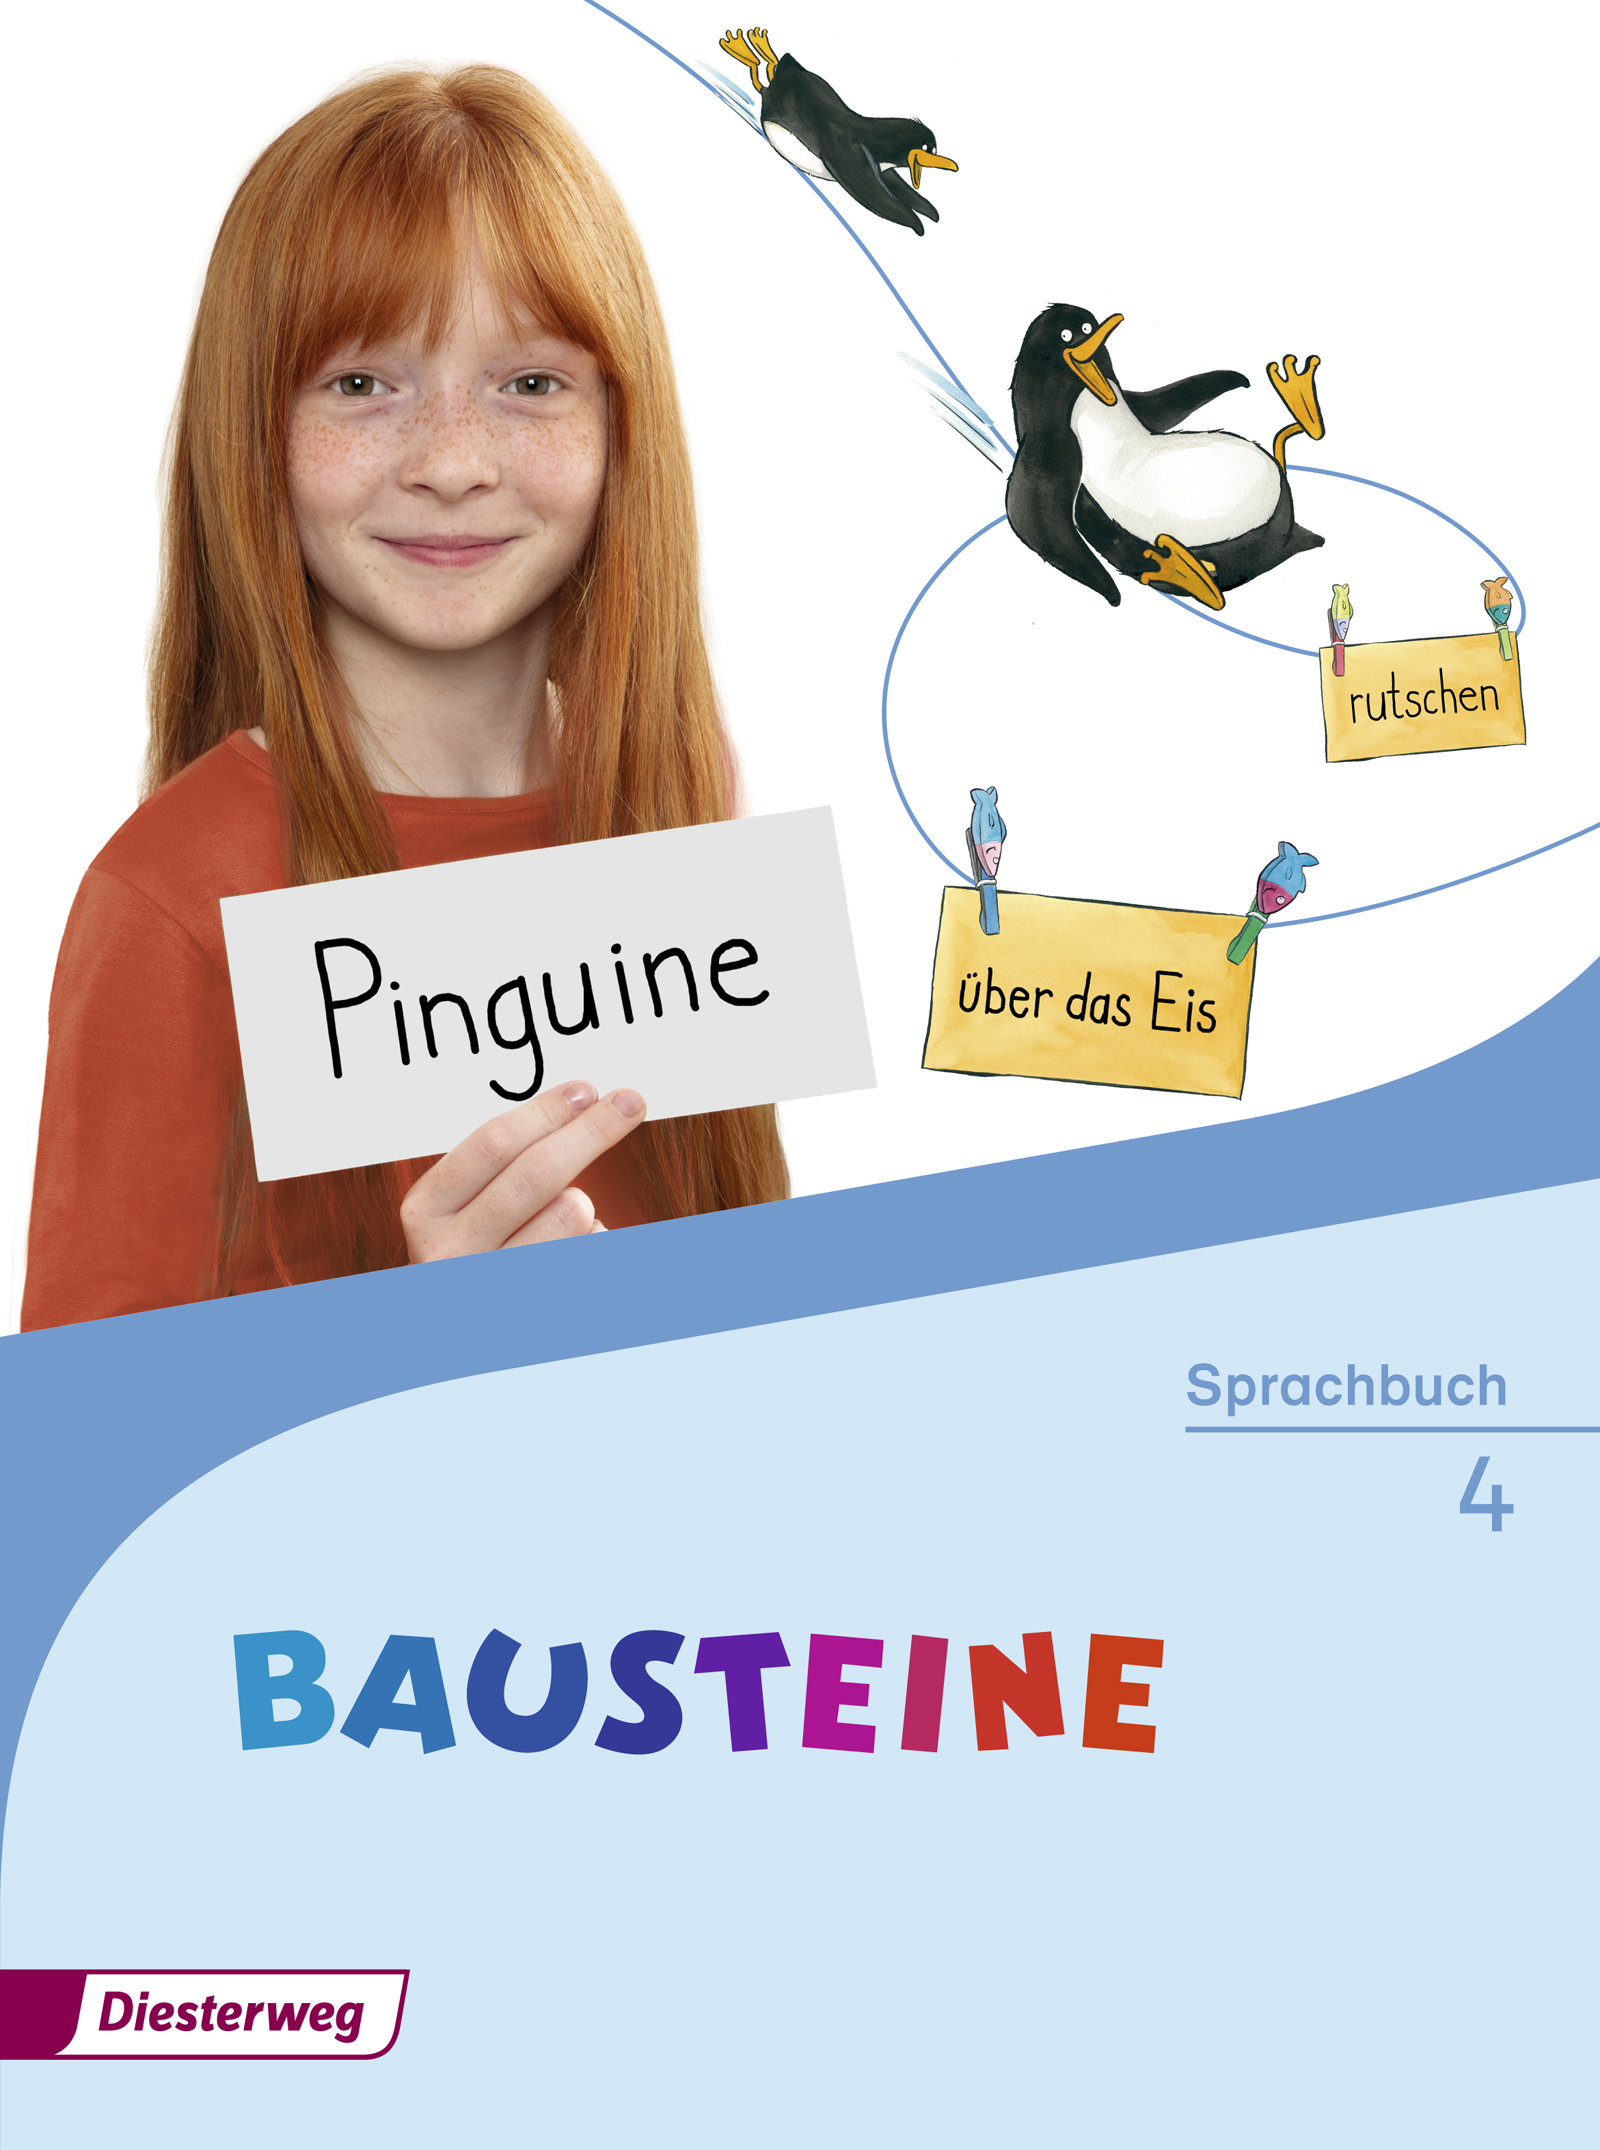 Bausteine Sprachbuch 4 - Ausgabe 2016, Klasse 4, Sprachbuch 4, Alle Bundesländer außer Bayern